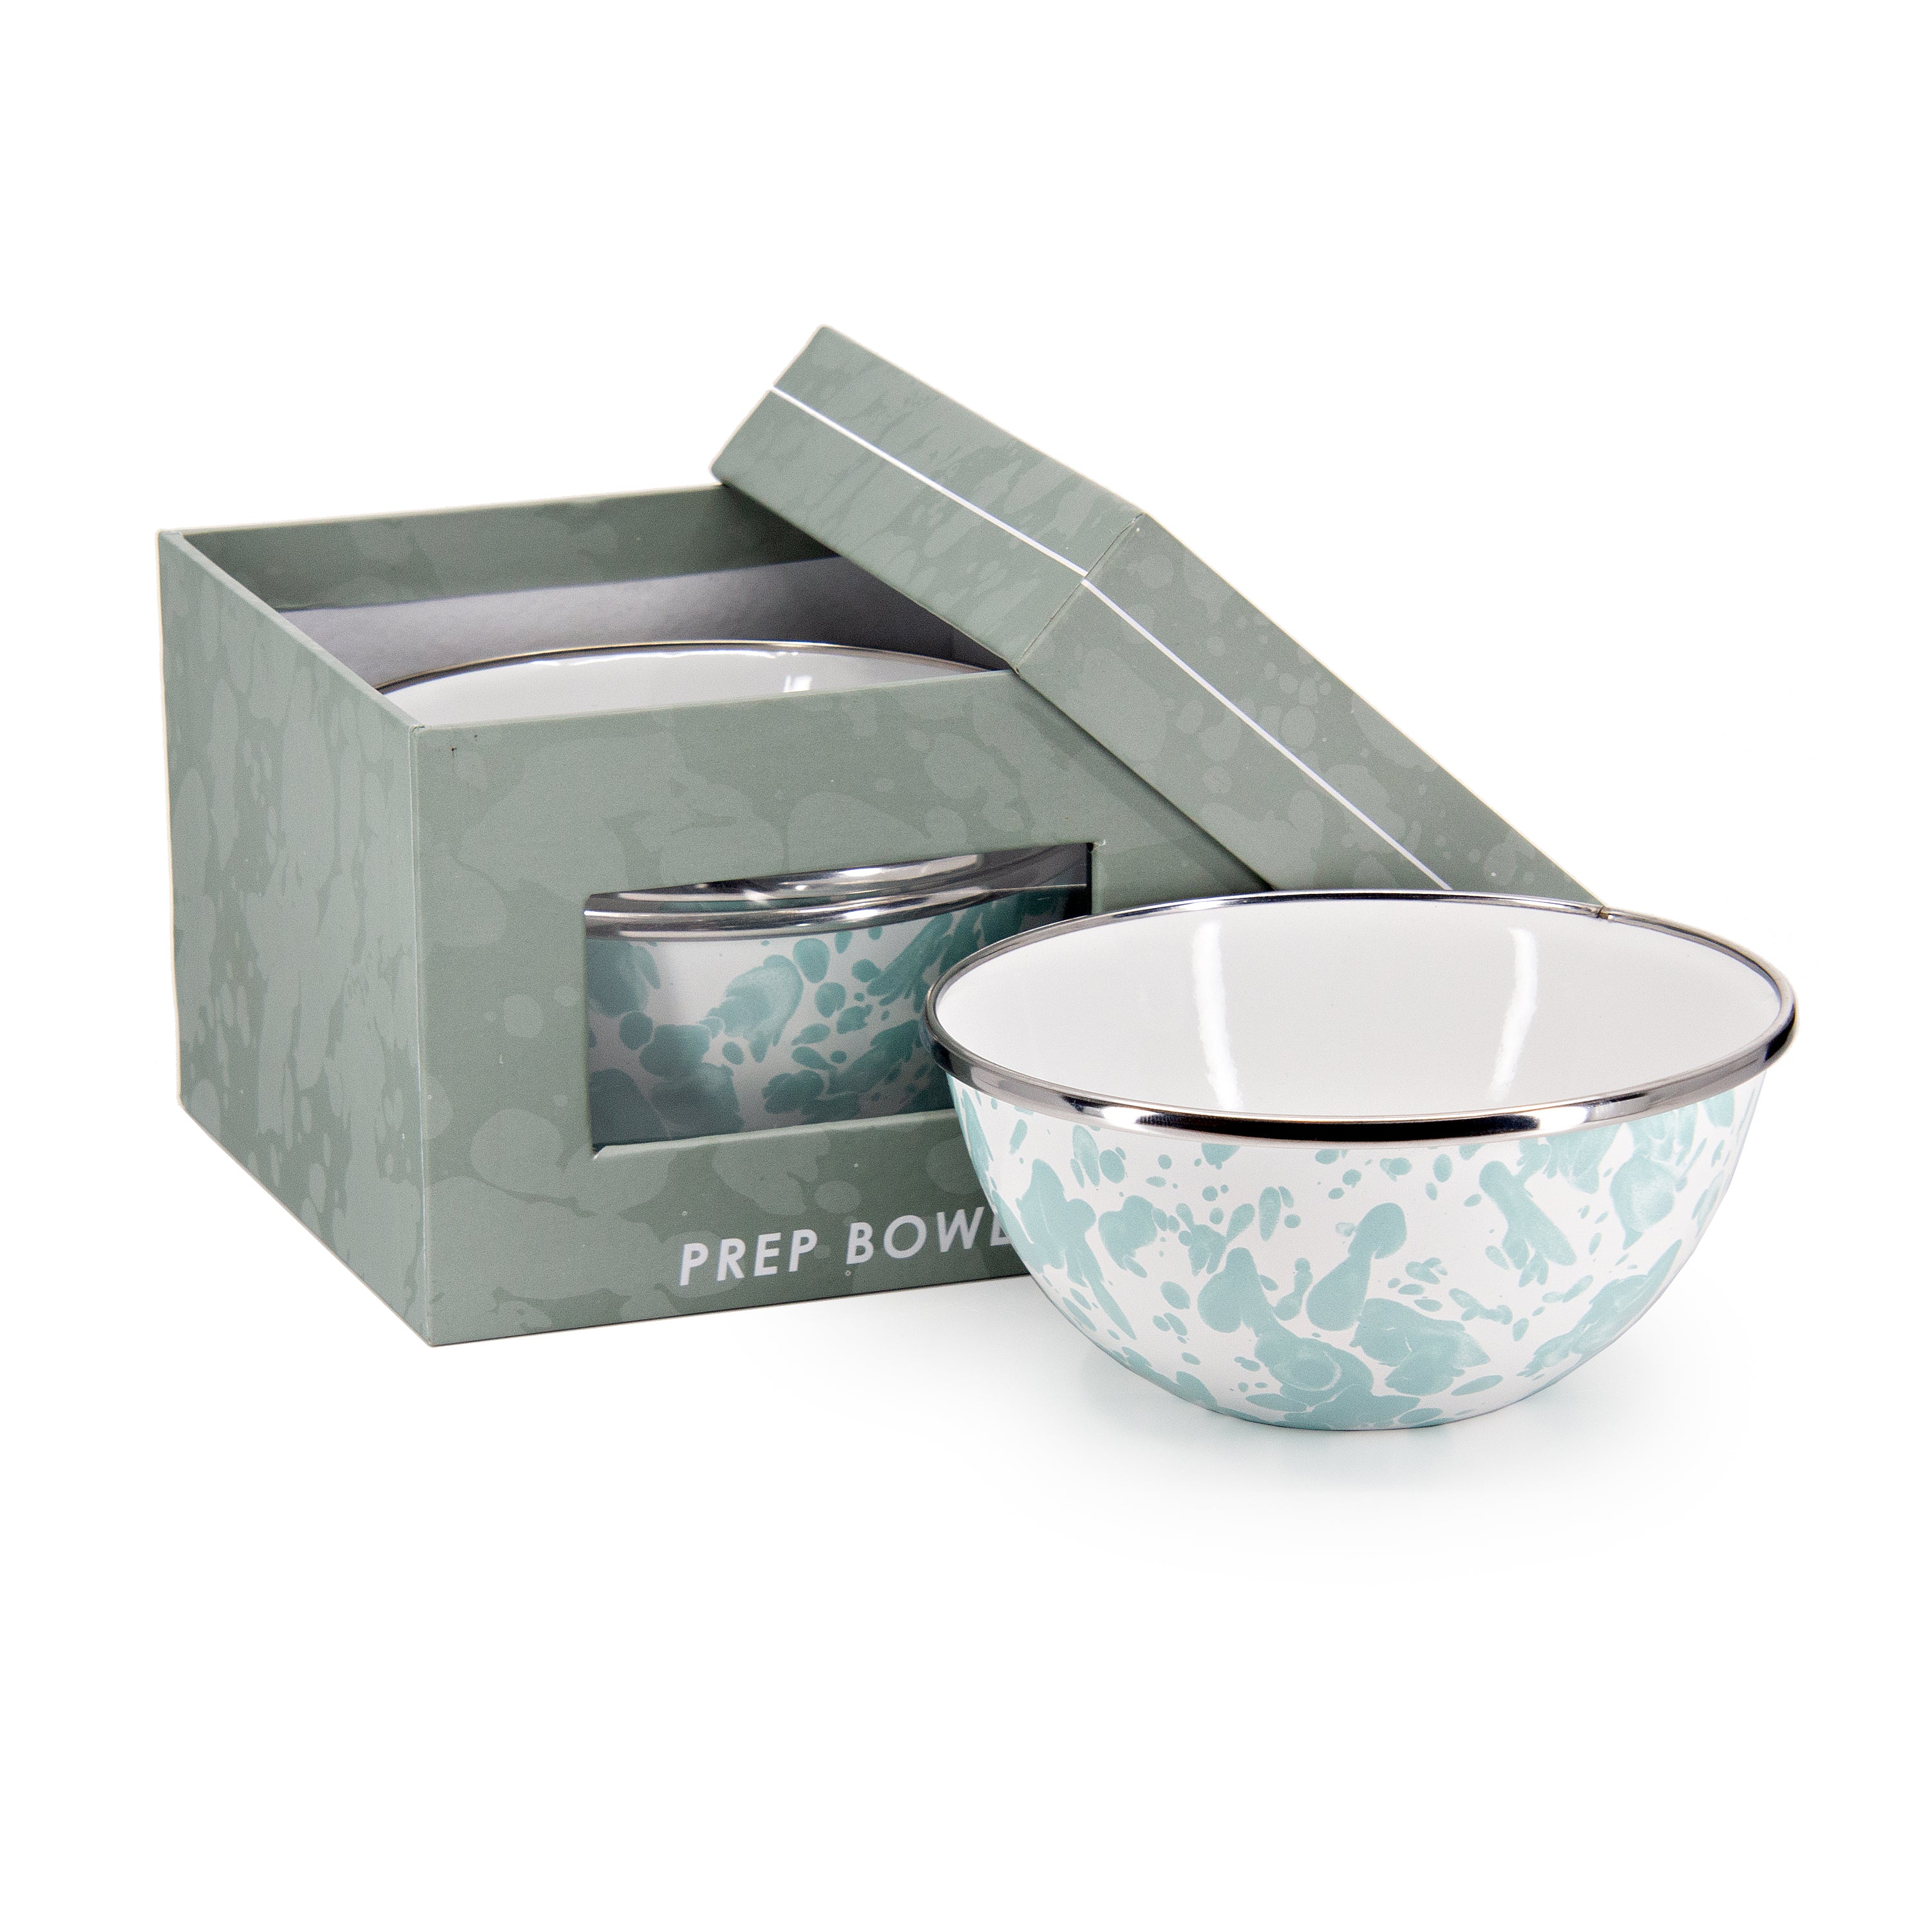 GL22 - Prep Bowl Gift Set - Sea Glass Design - UPC 619199220450